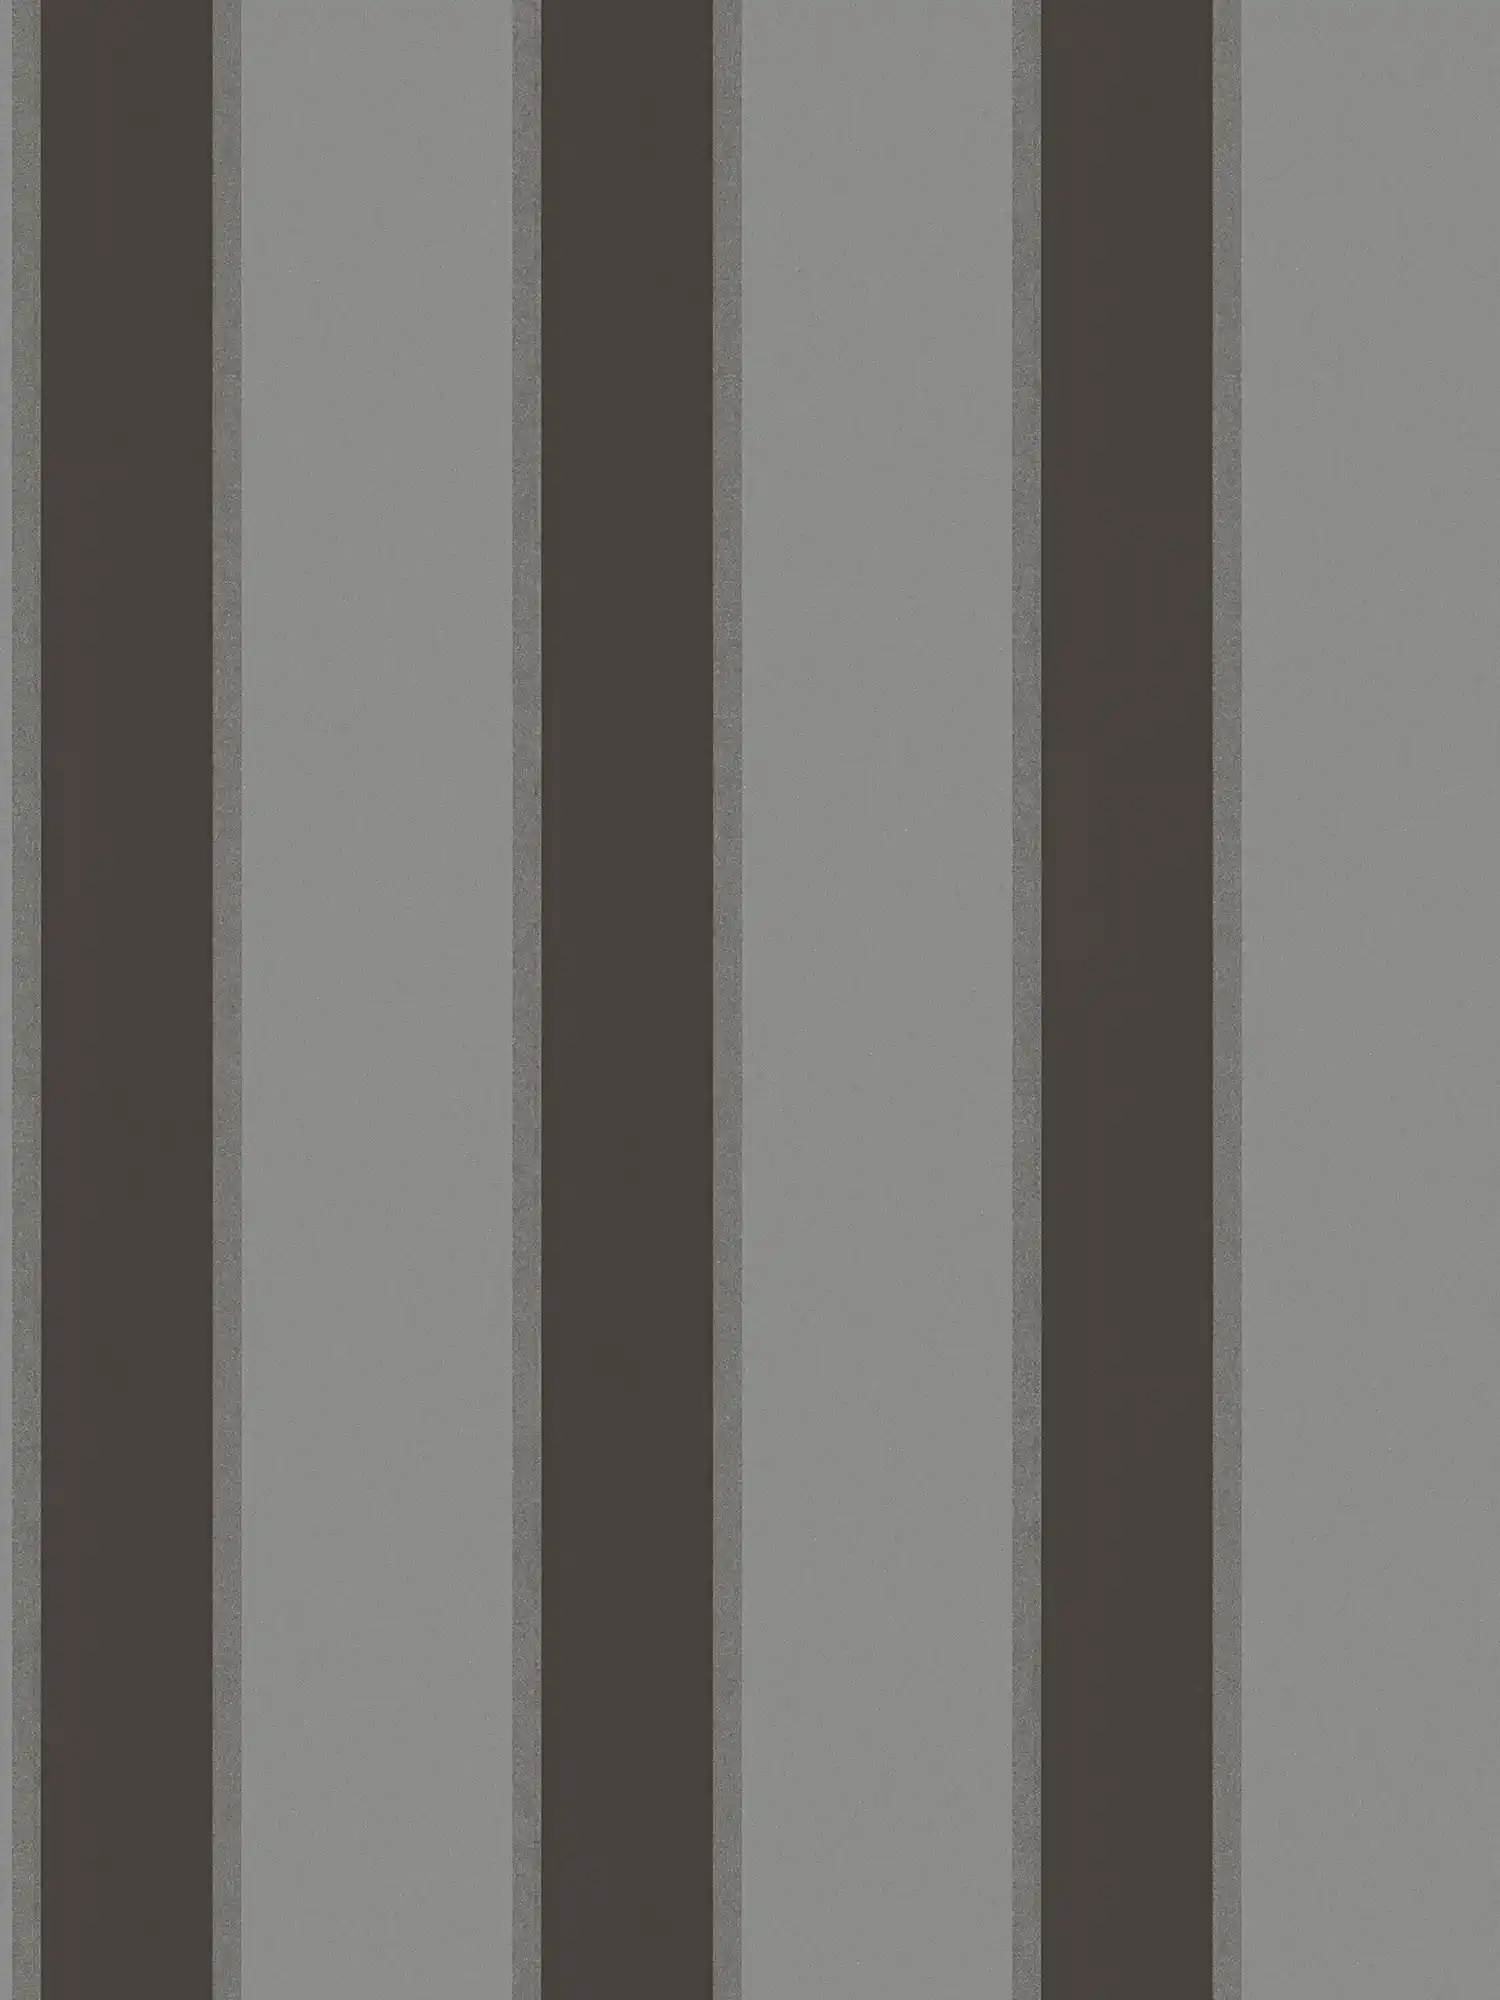 Metallic behang met strepenpatroon - grijs, zwart
